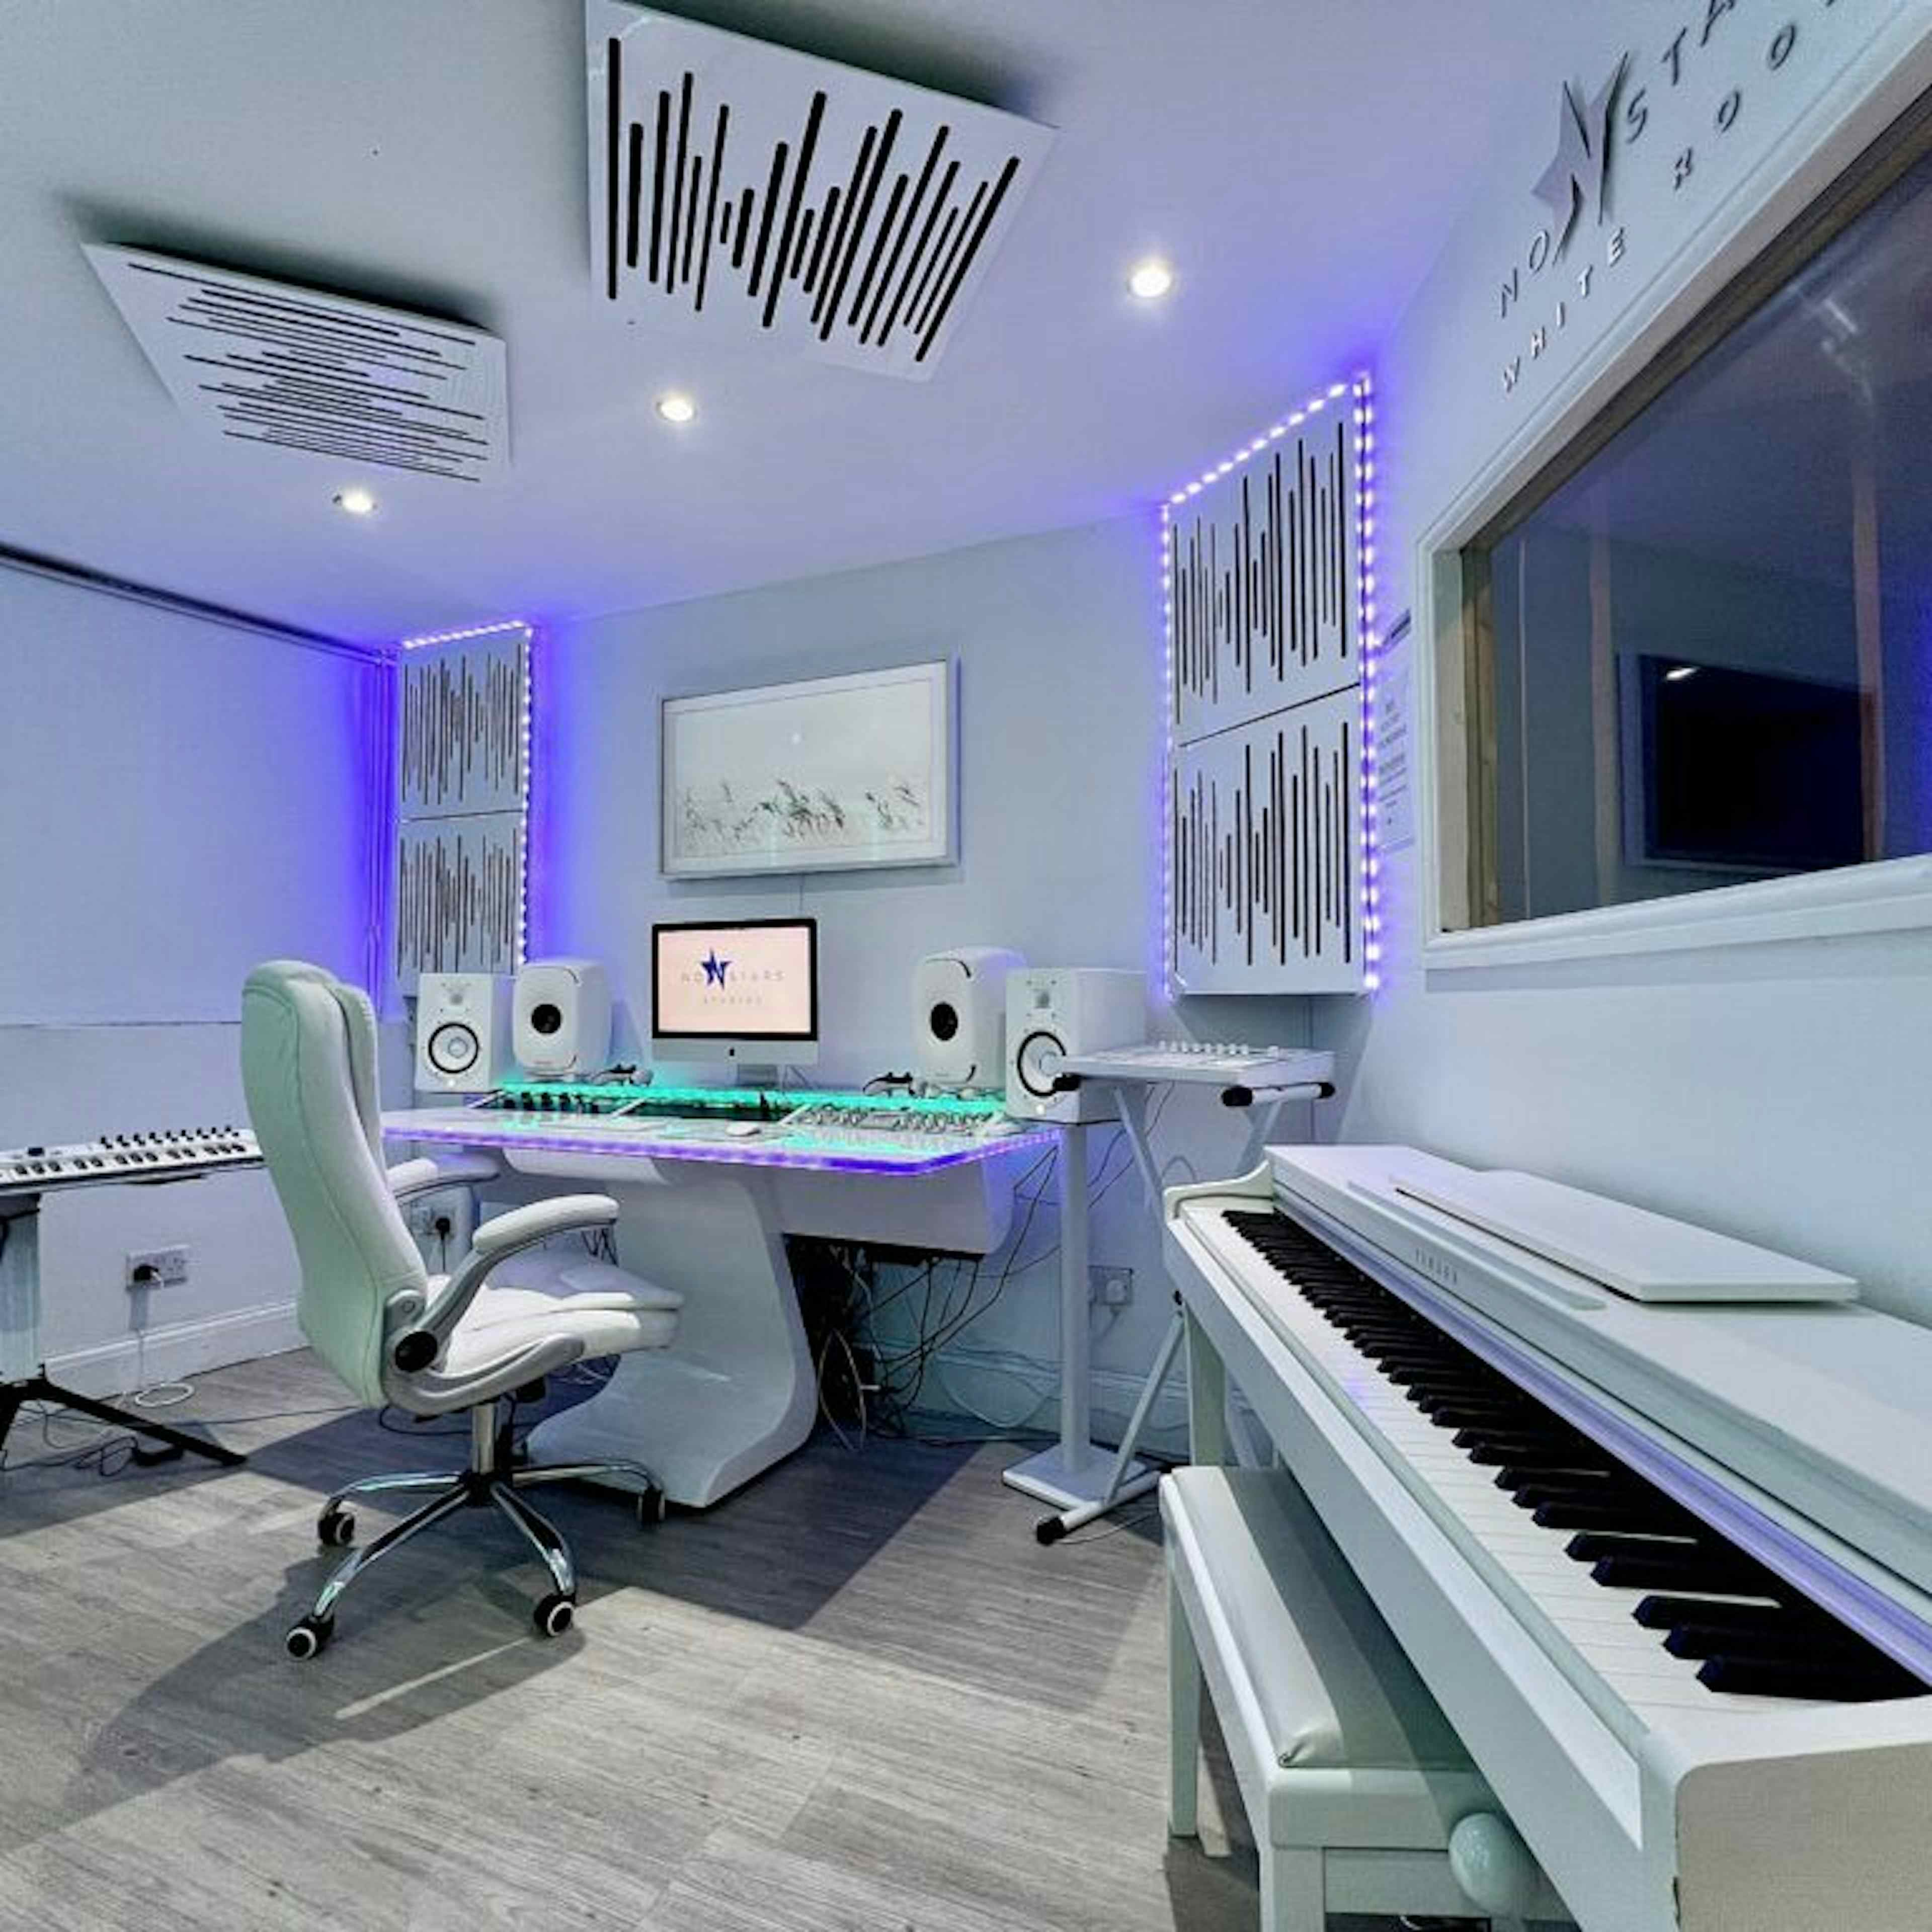 9M Studios - Recording Studio image 2